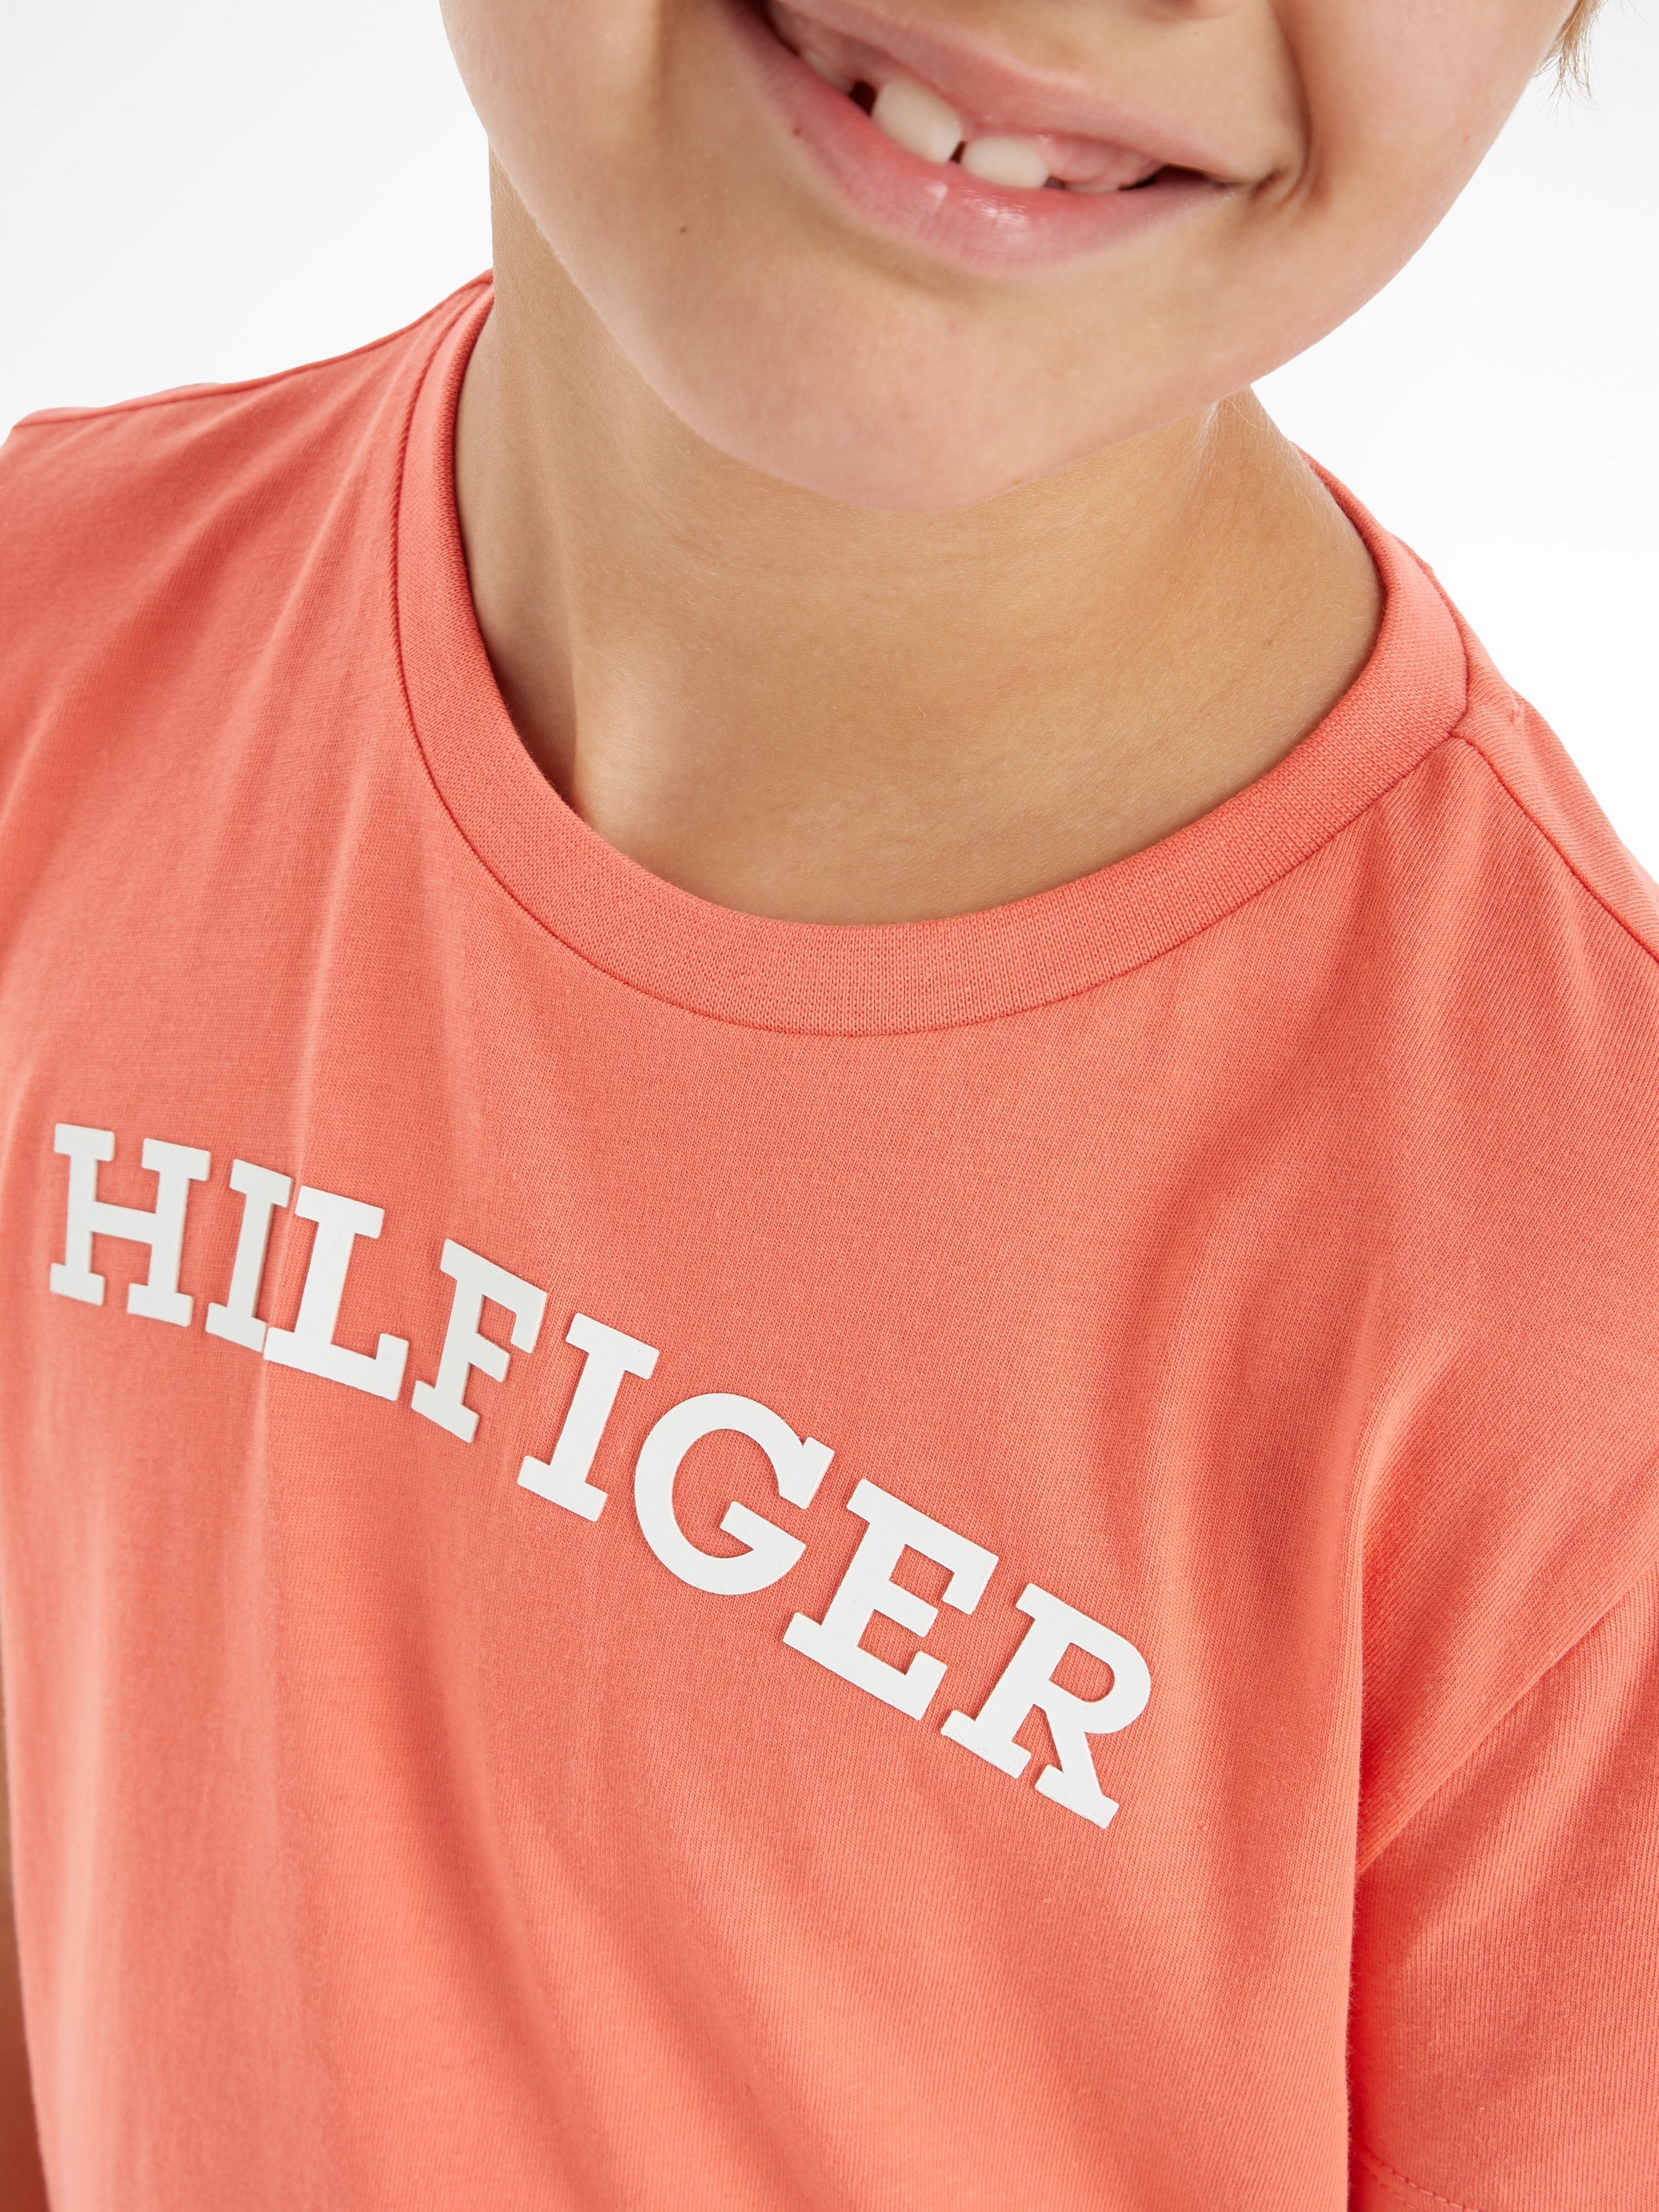 Tommy Hilfiger MONOTYPE TEE S/S Hilfiger-Logoschriftzug modischem koralle T-Shirt auf der mit Brust